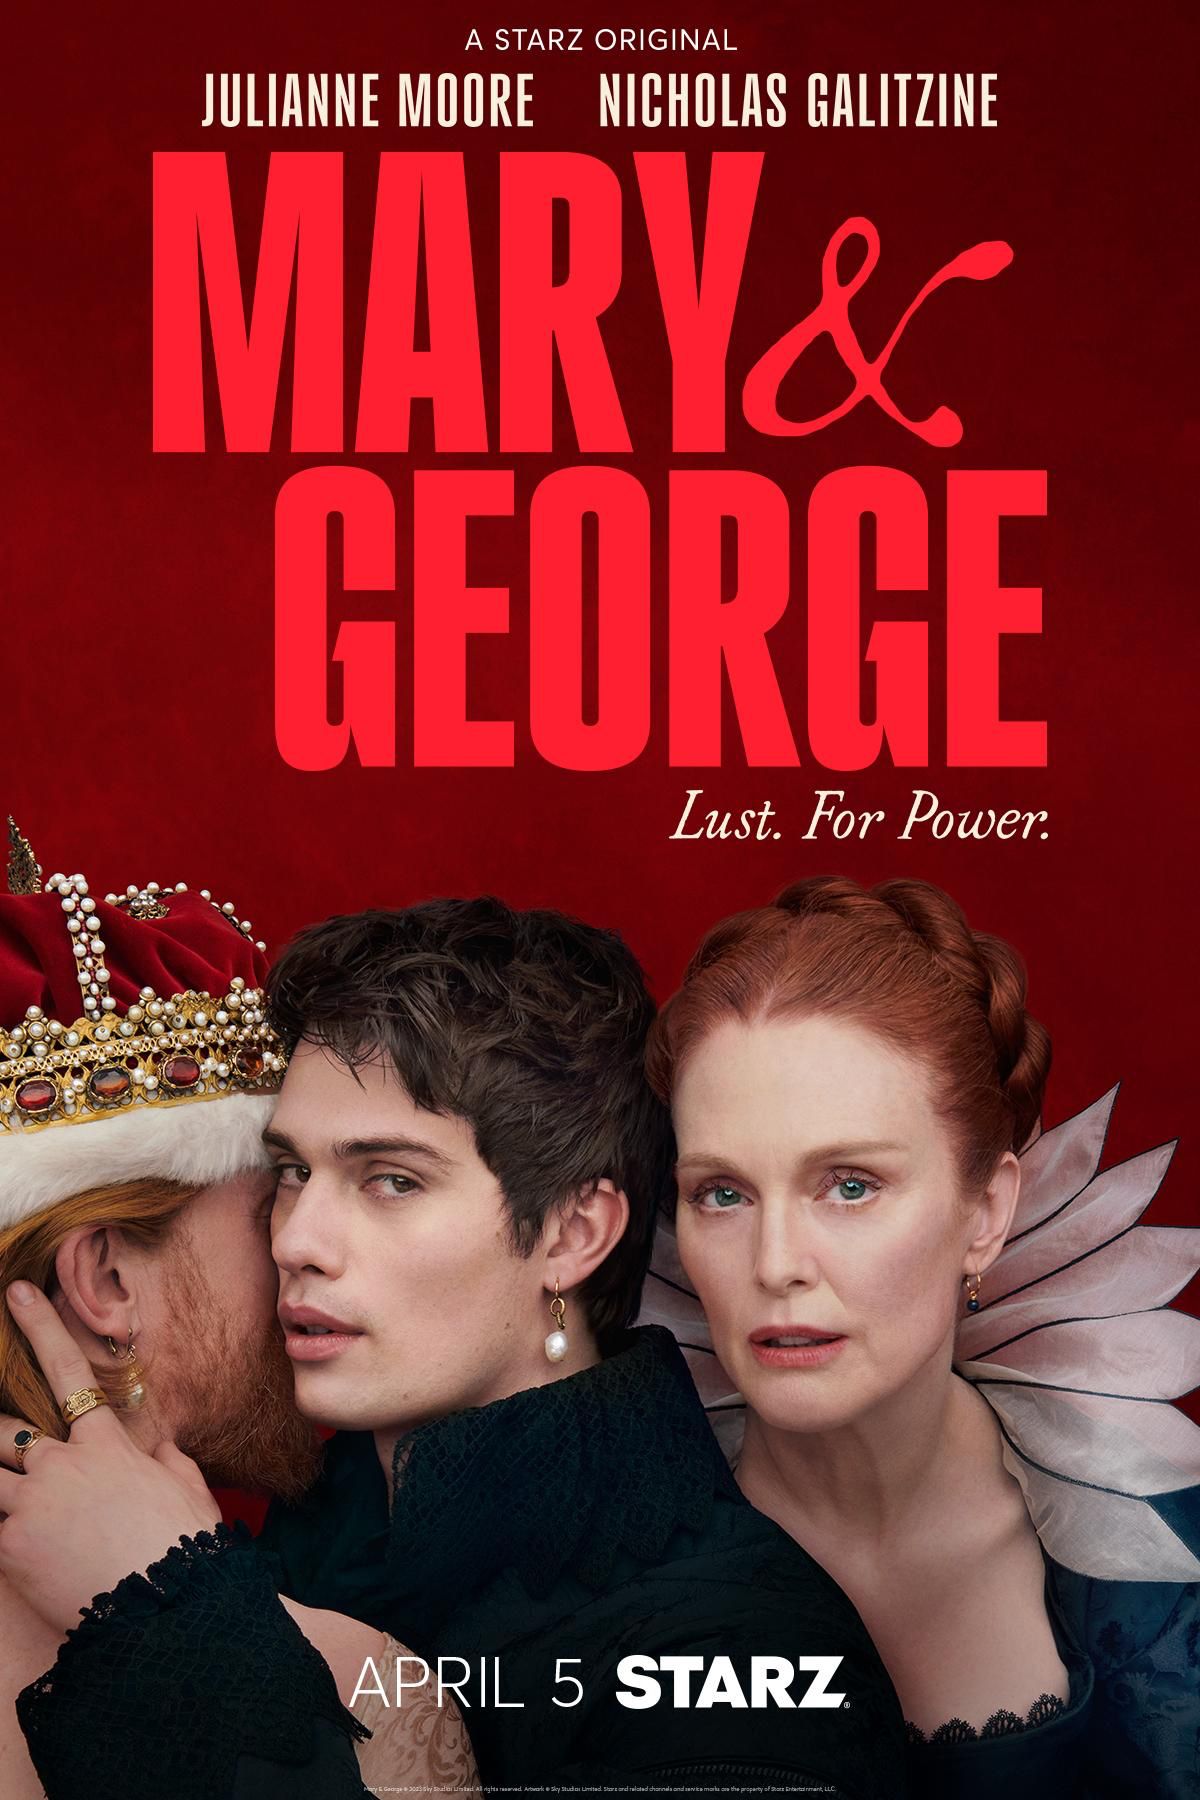 Pôster da série de TV Mary e George